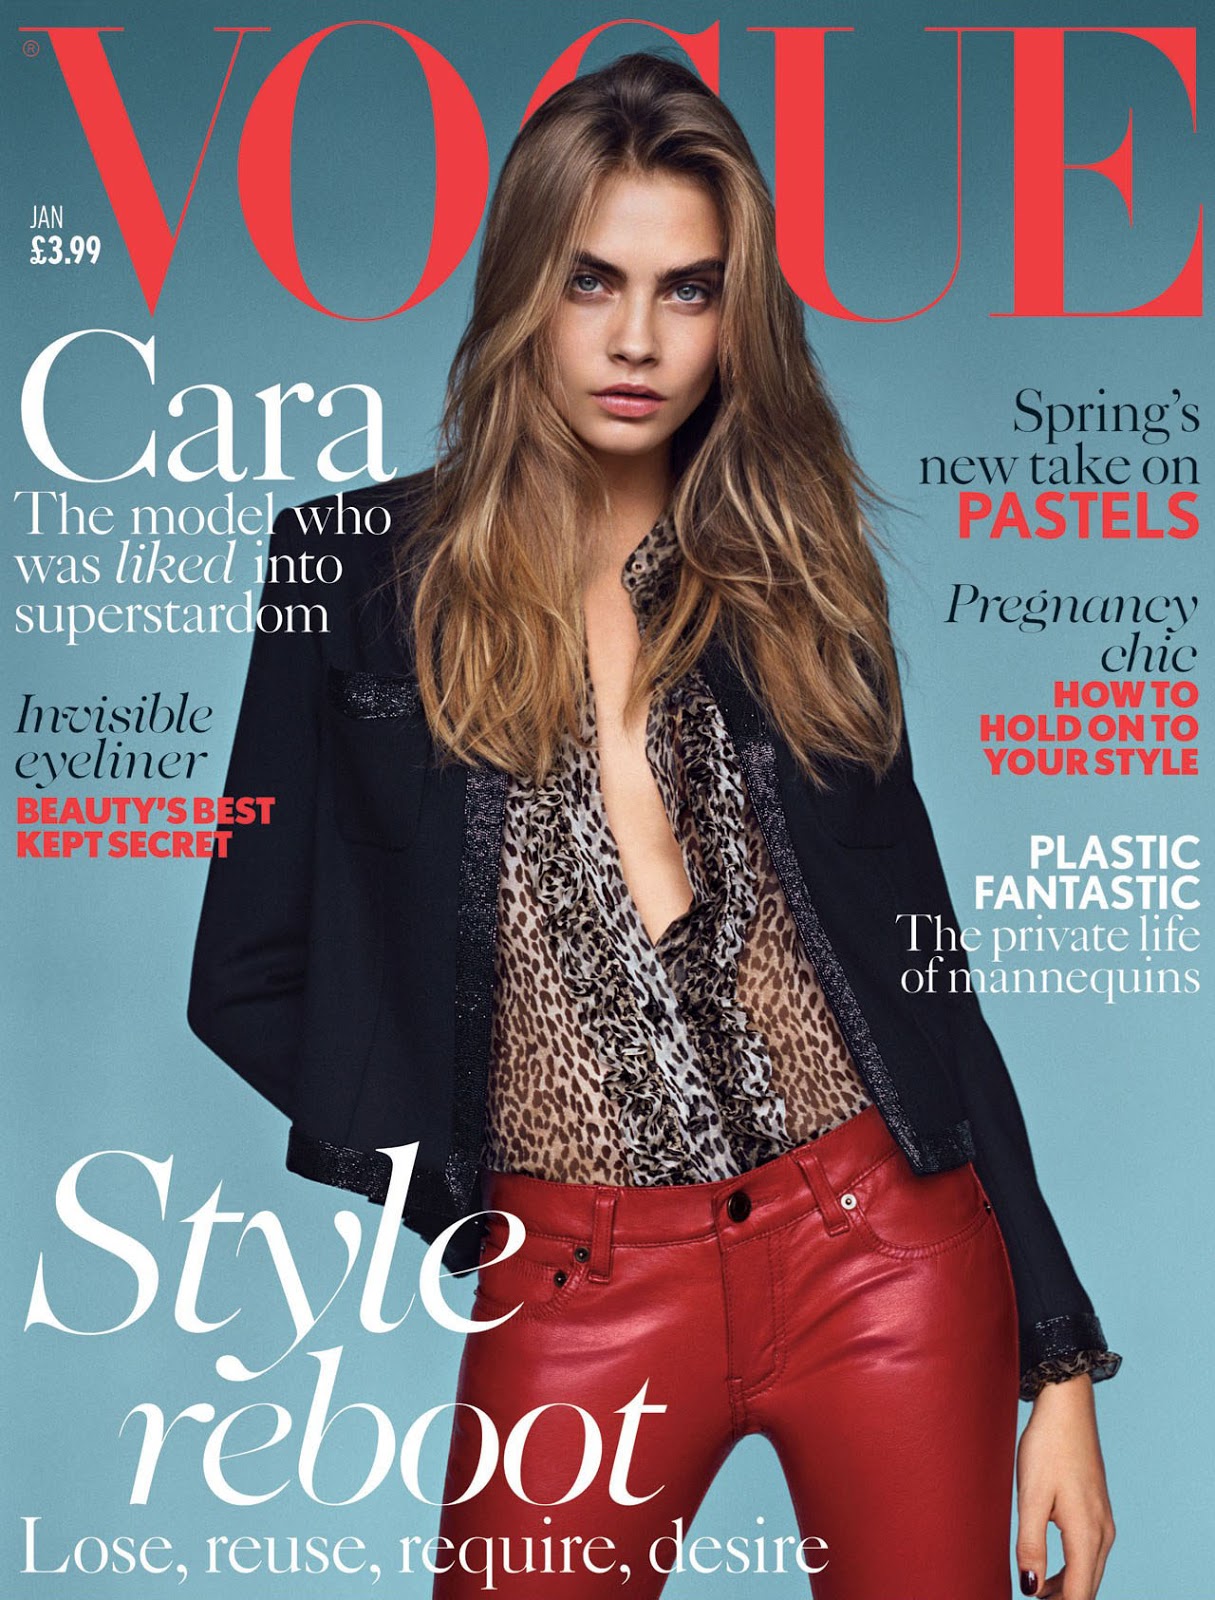 Girl power - Vogue, Wielka Brytania, styczeń 2014